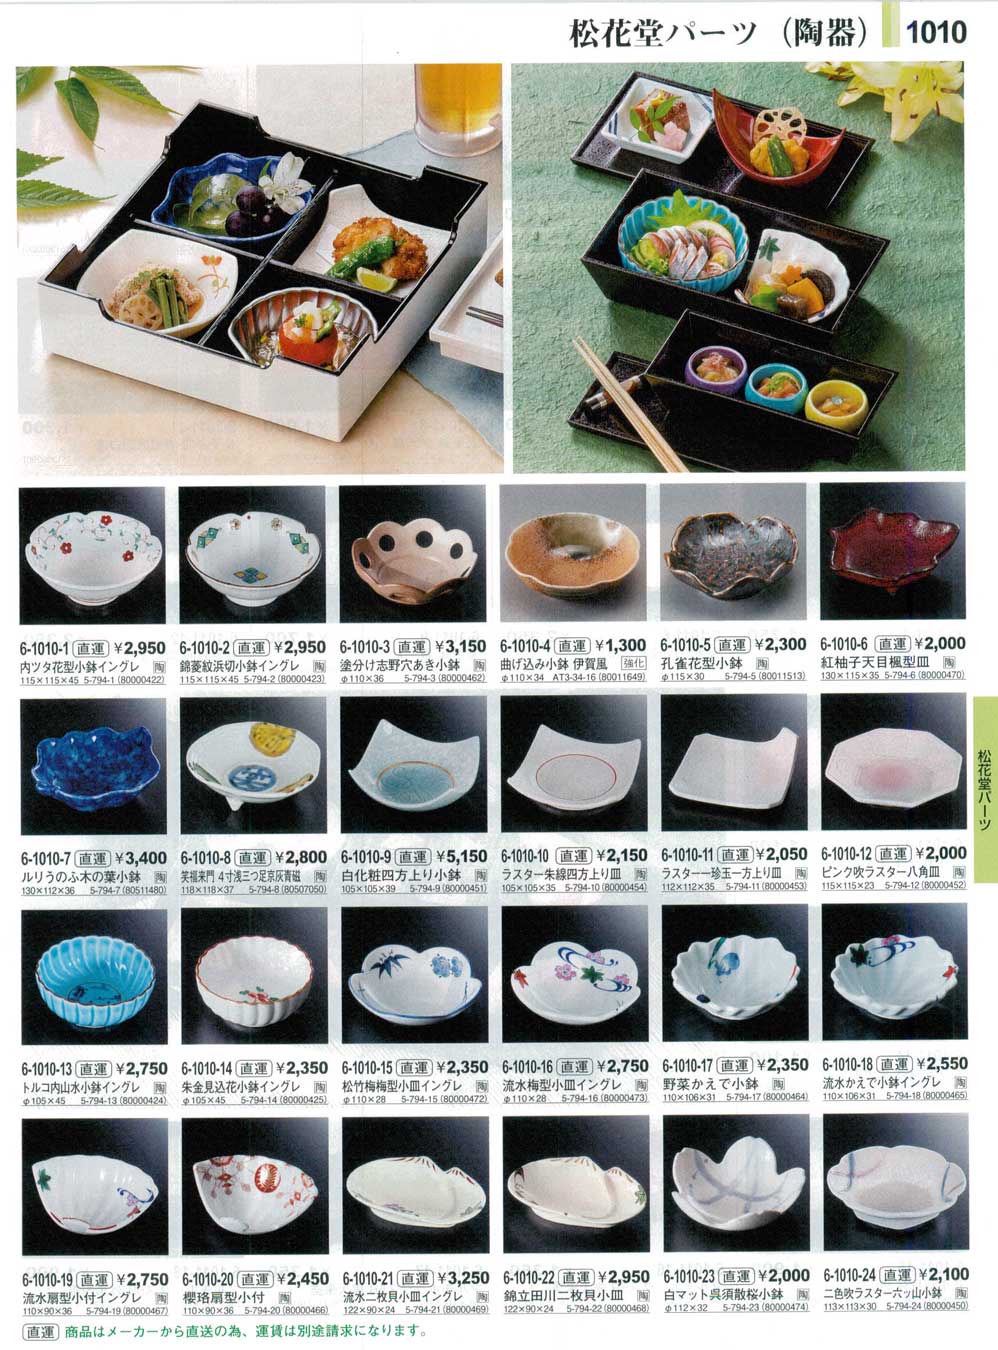 食器 松花堂パーツ（陶器）Shokado Bento Dishes やすらぎ３１－1010ページ